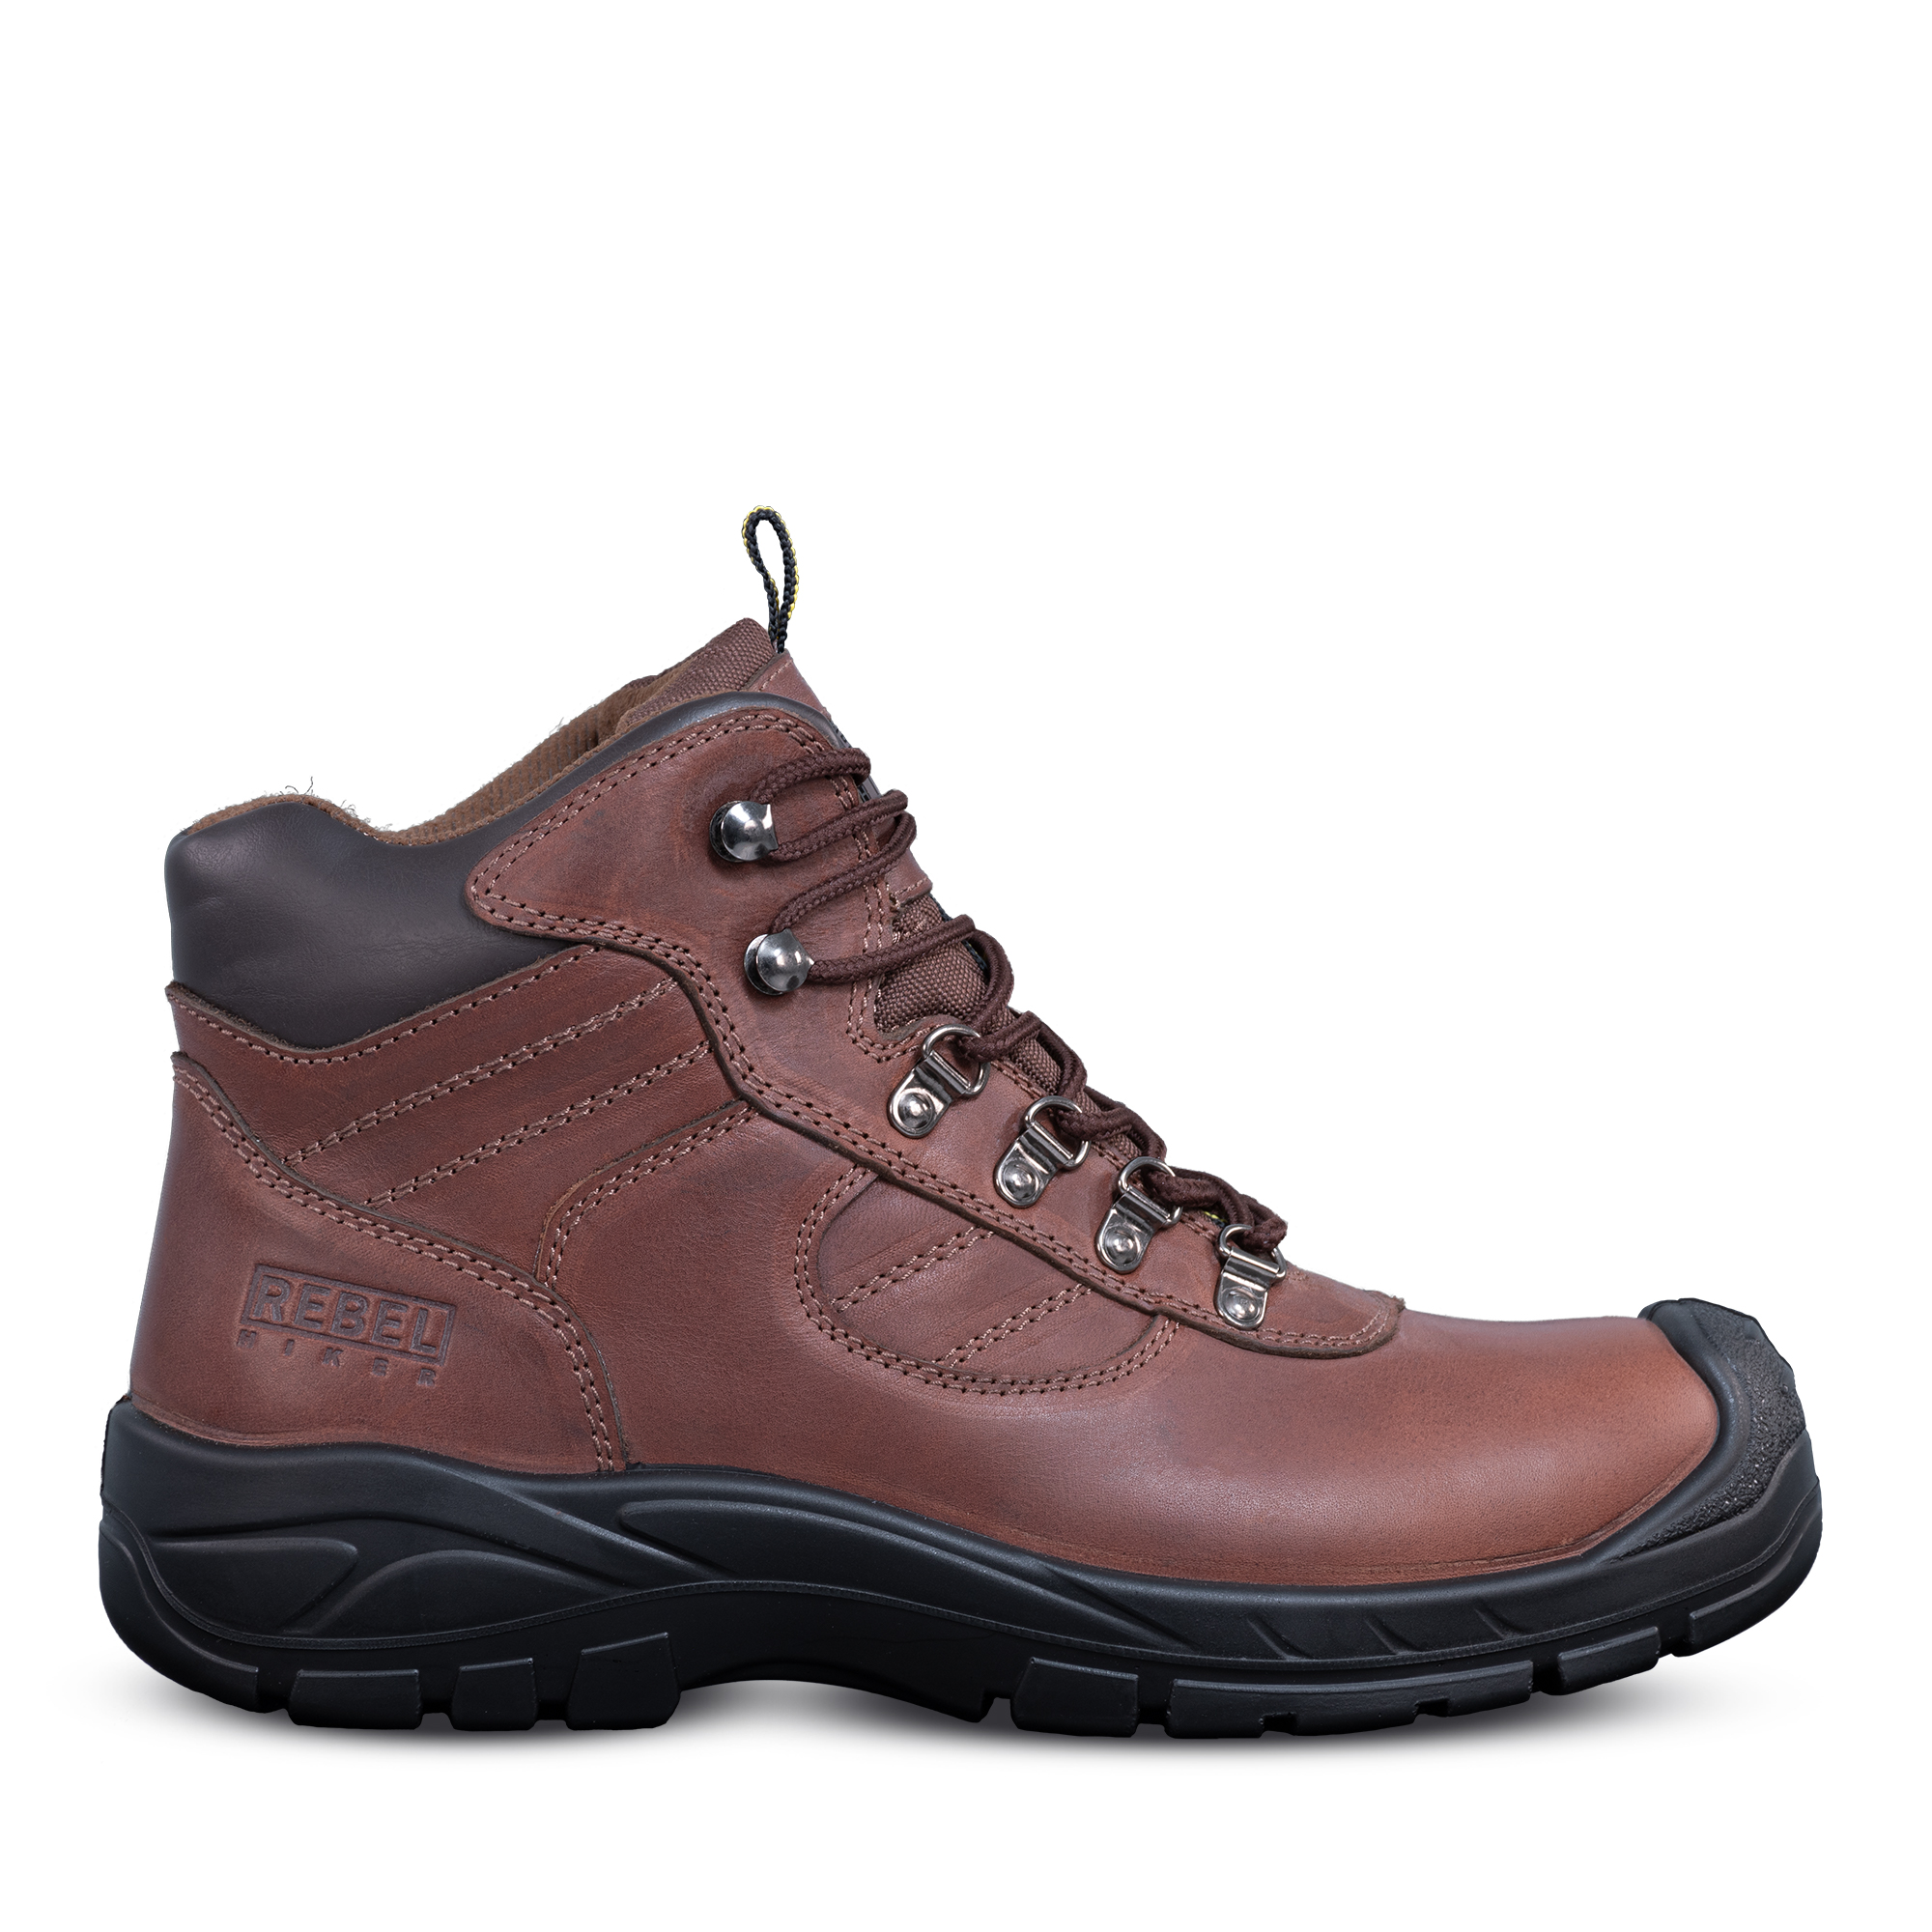 Rebel Hiker Safety Boots | vlr.eng.br